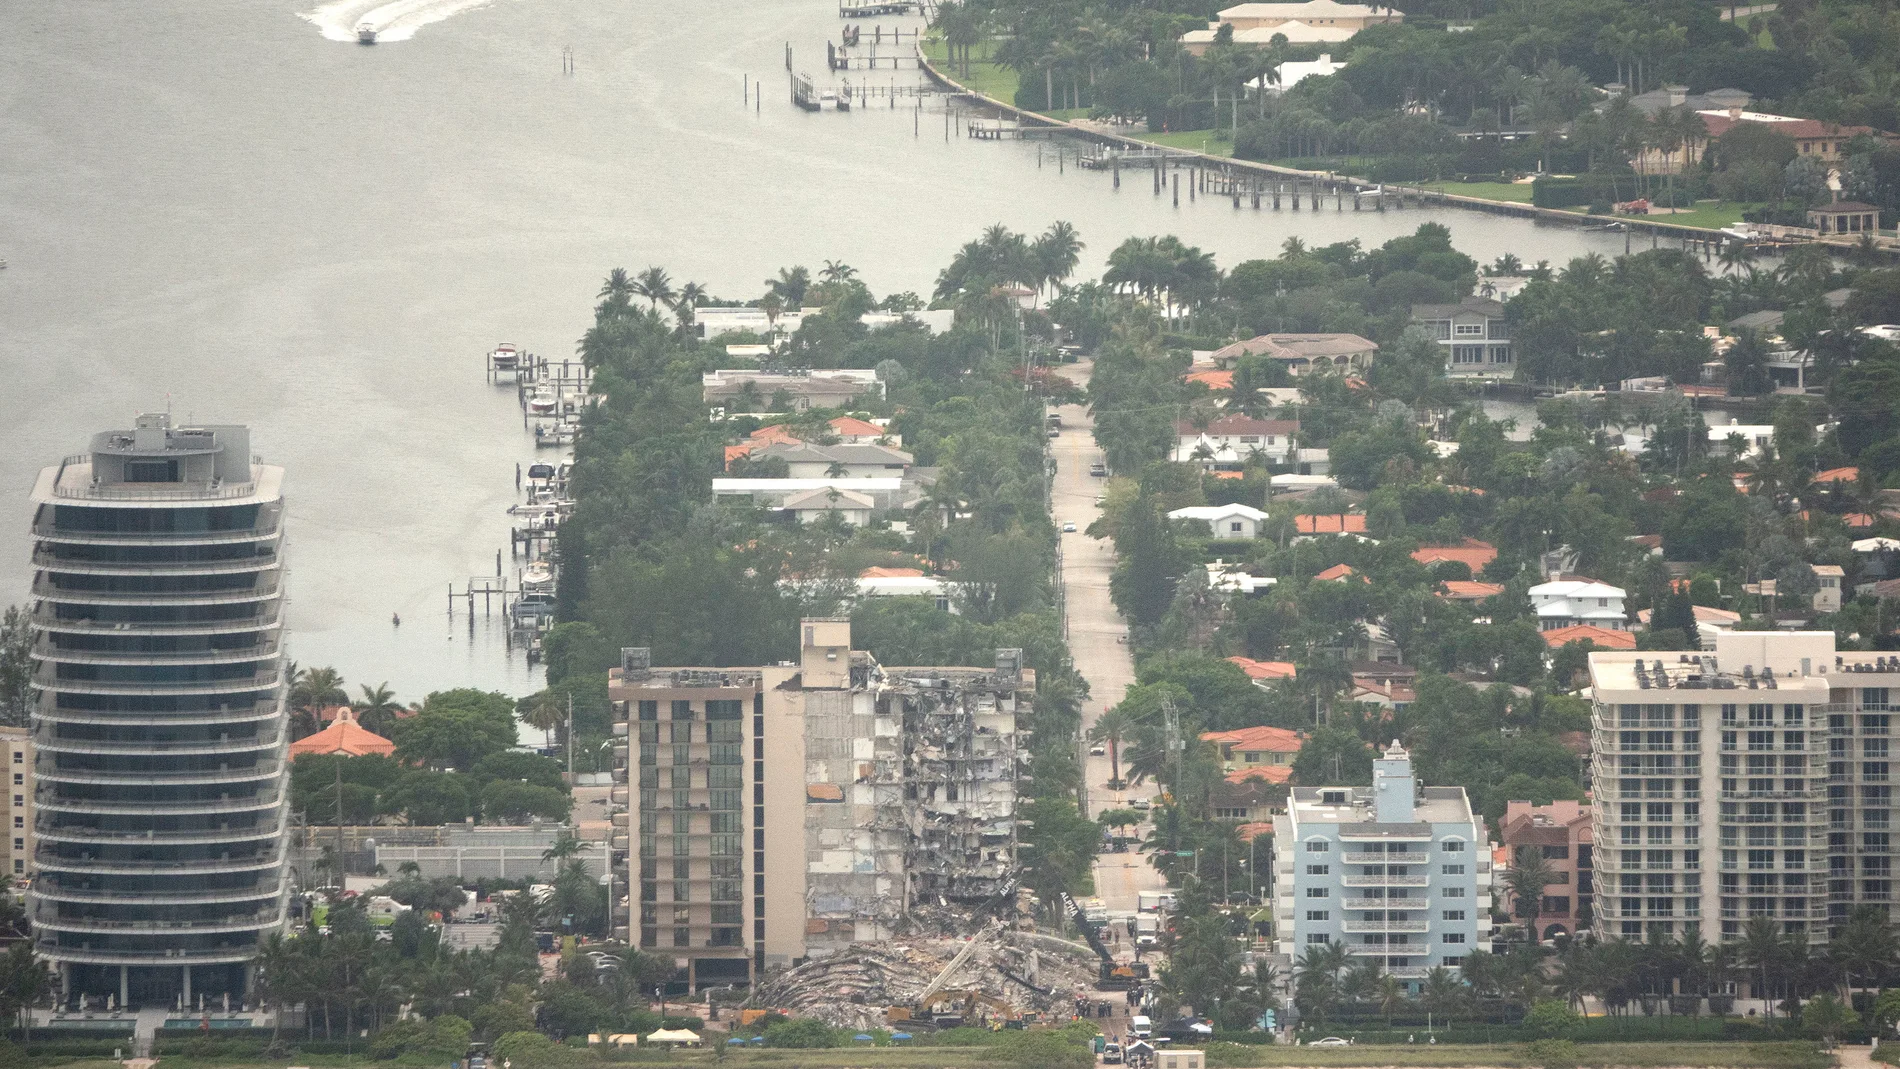 Vista áerea del edificio derrumbado en Surfside, Miami